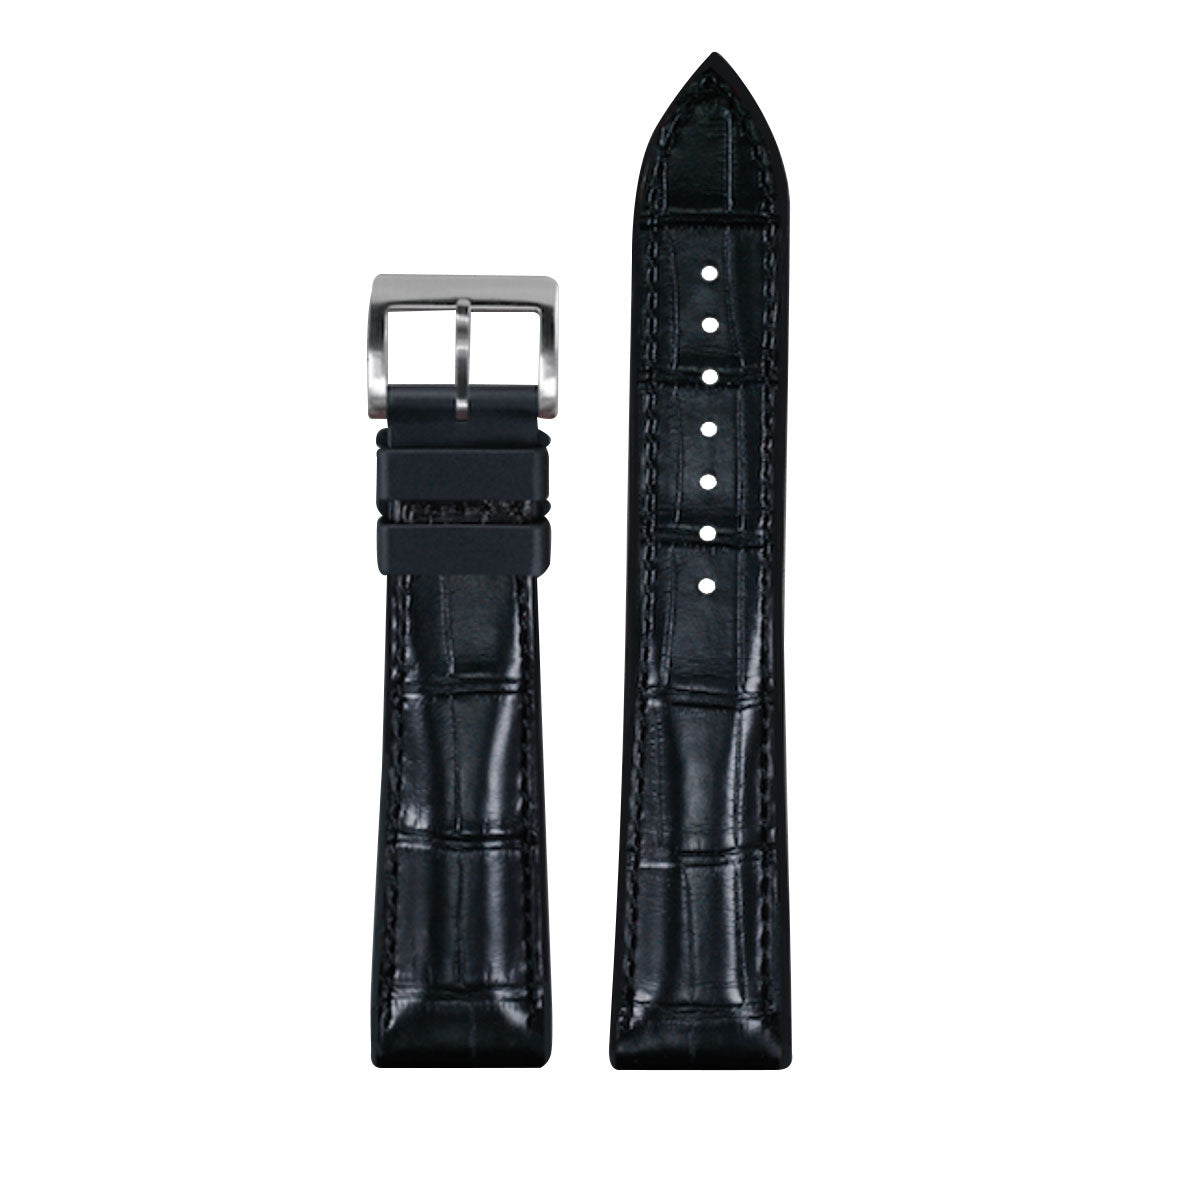 Rubber B - Bracelet caoutchouc en Alligator - Série Structure base Noire - watch band leather strap - ABP Concept -